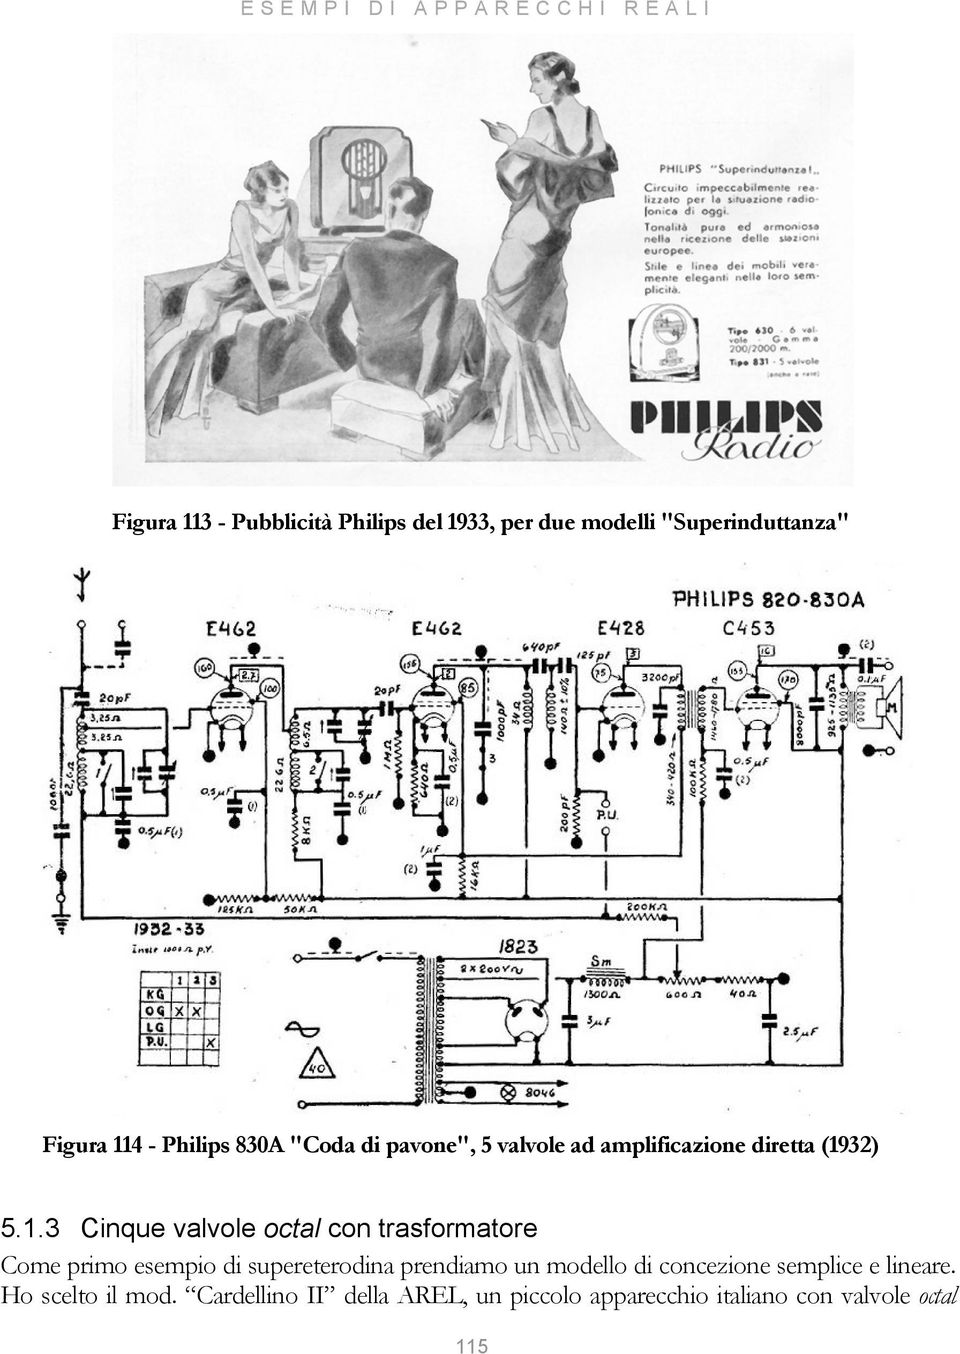 4 - Philips 830A "Coda di pavone", 5 valvole ad amplificazione diretta (19